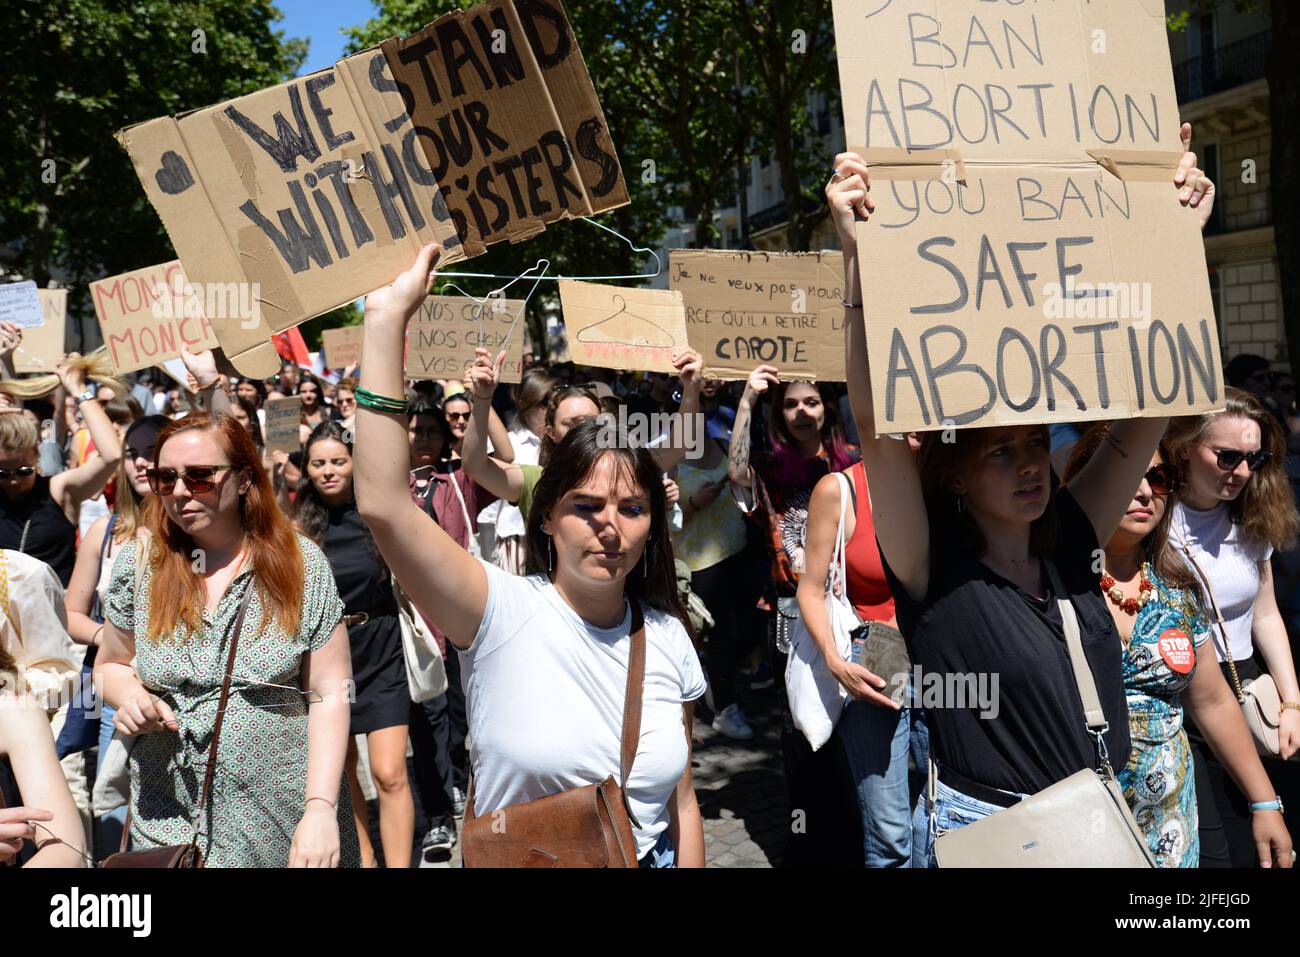 Gran movilización para mantener el derecho al aborto En Francia, varios diputados (D.Simmonet/S.Rousseau/F.Roussel) vinieron a apoyar la causa de las feministas. Foto de stock